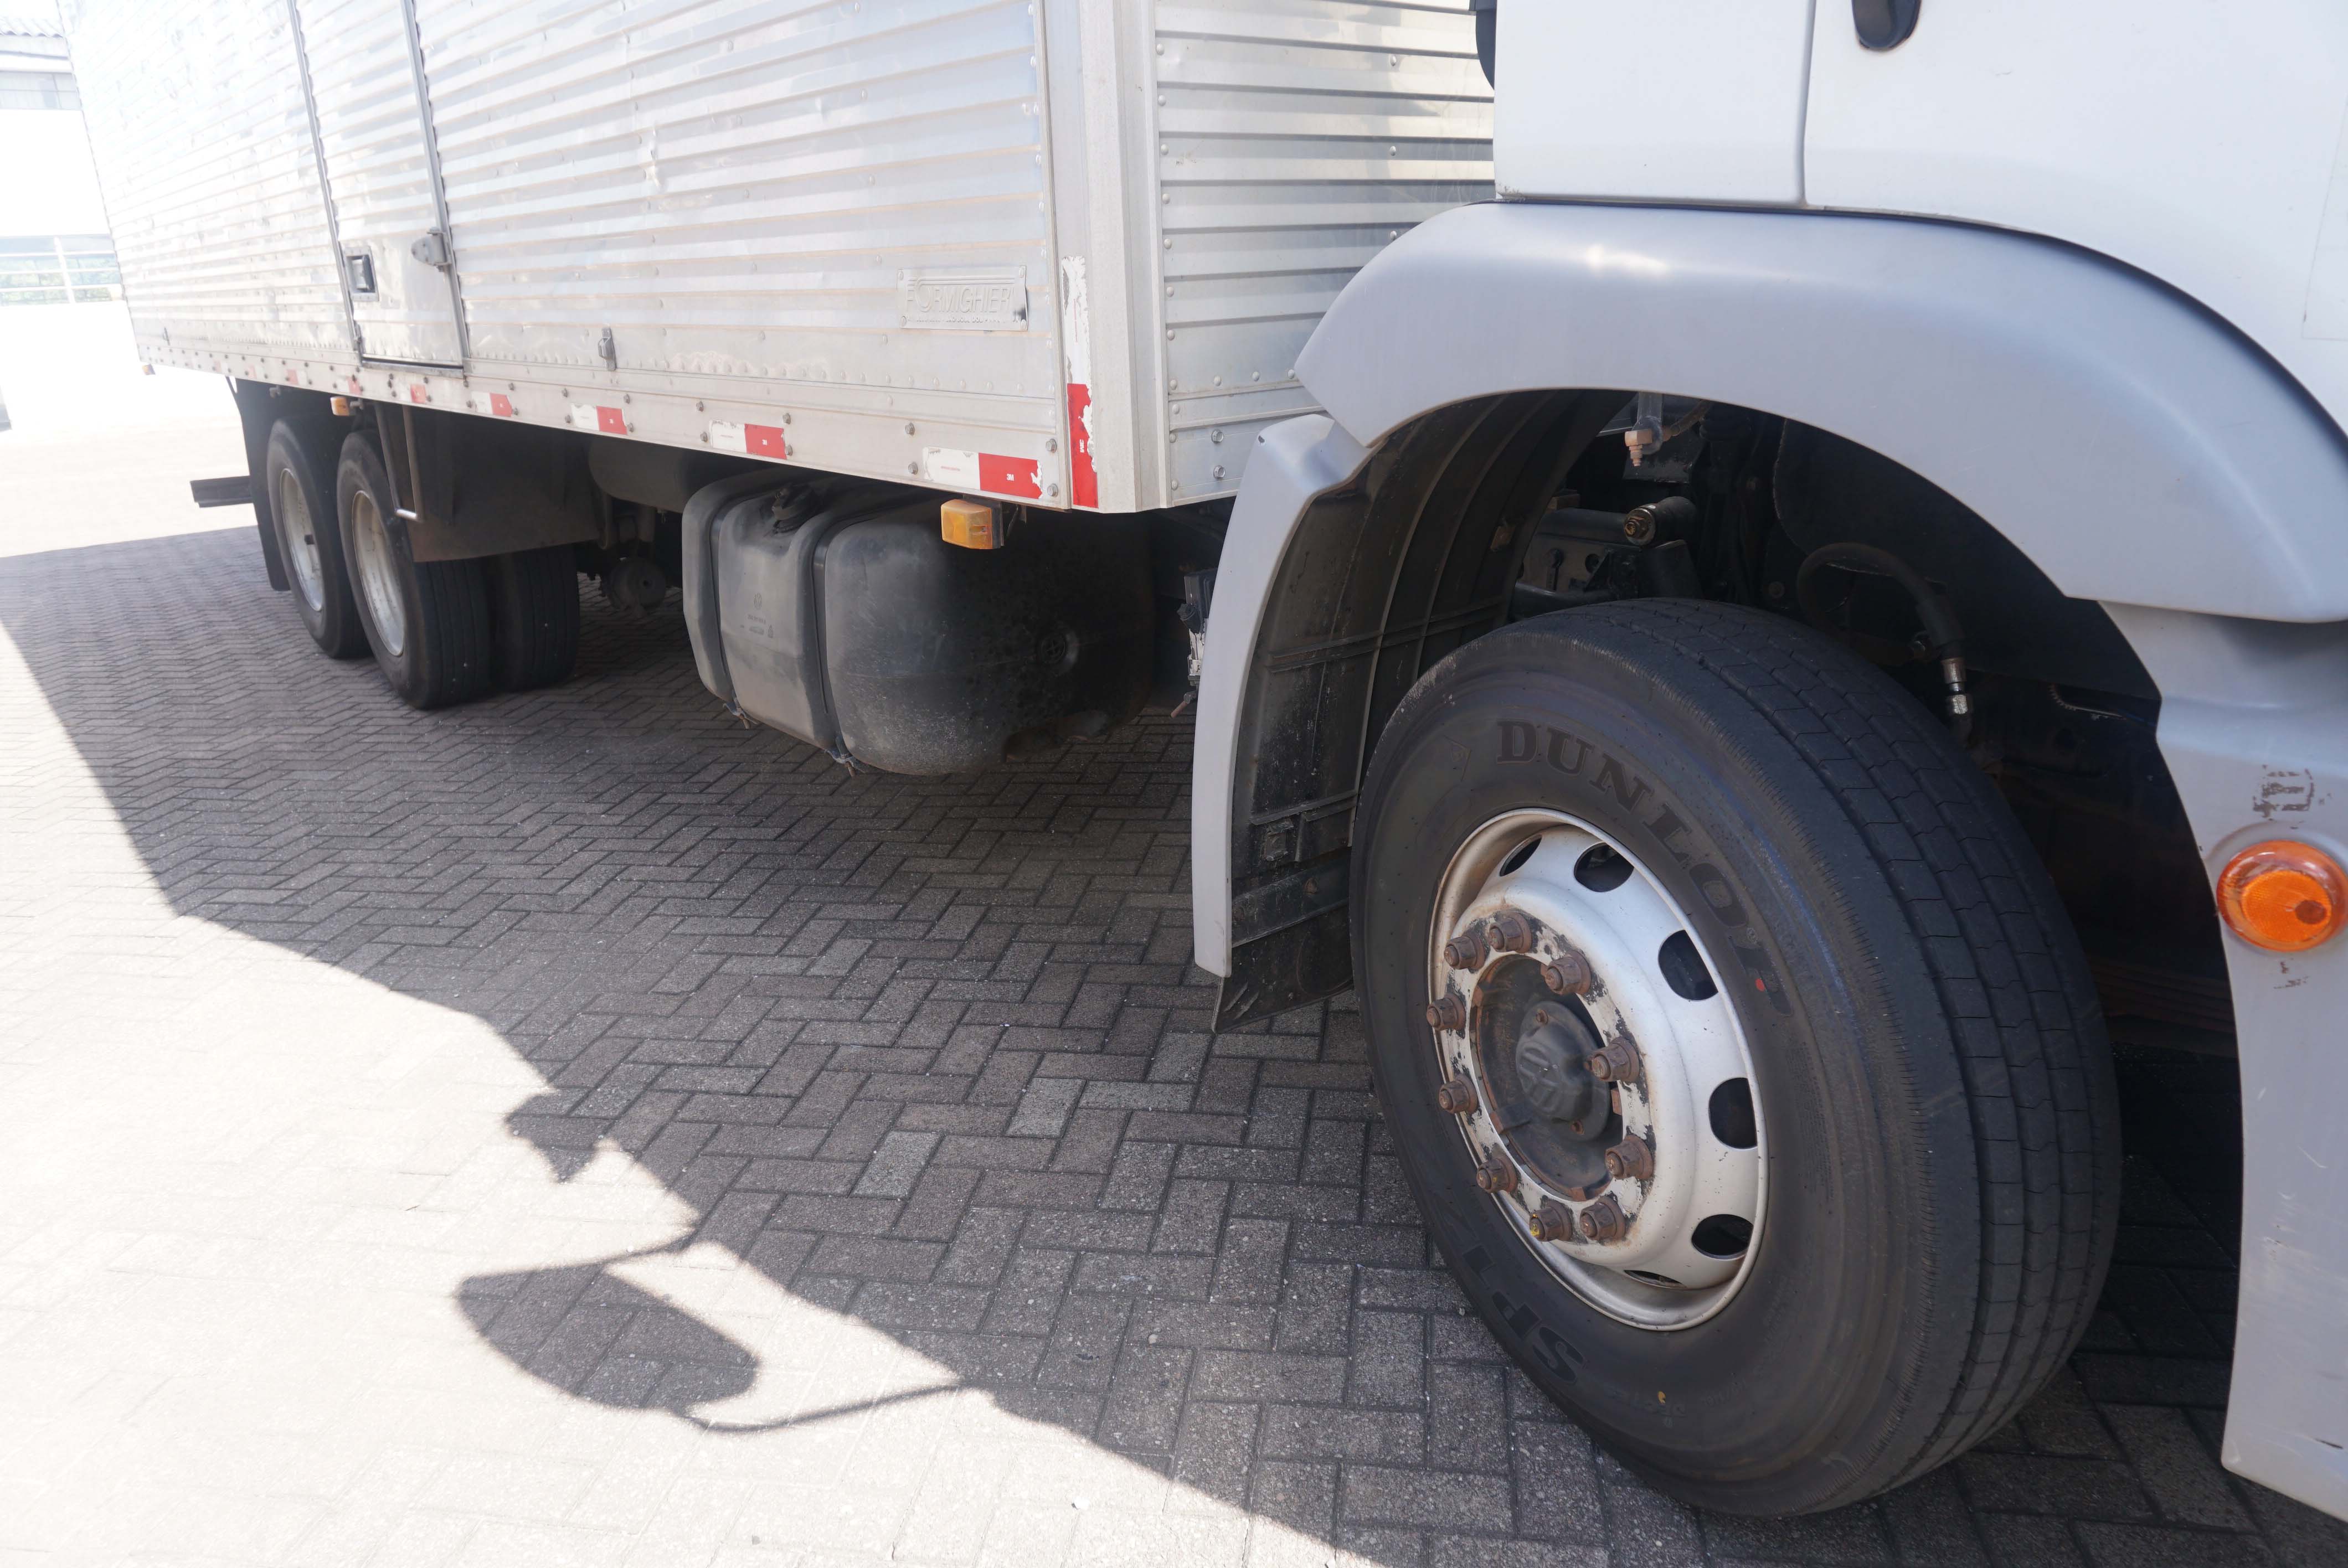  Detran-PR orienta caminhoneiros sobre manutenção veicular